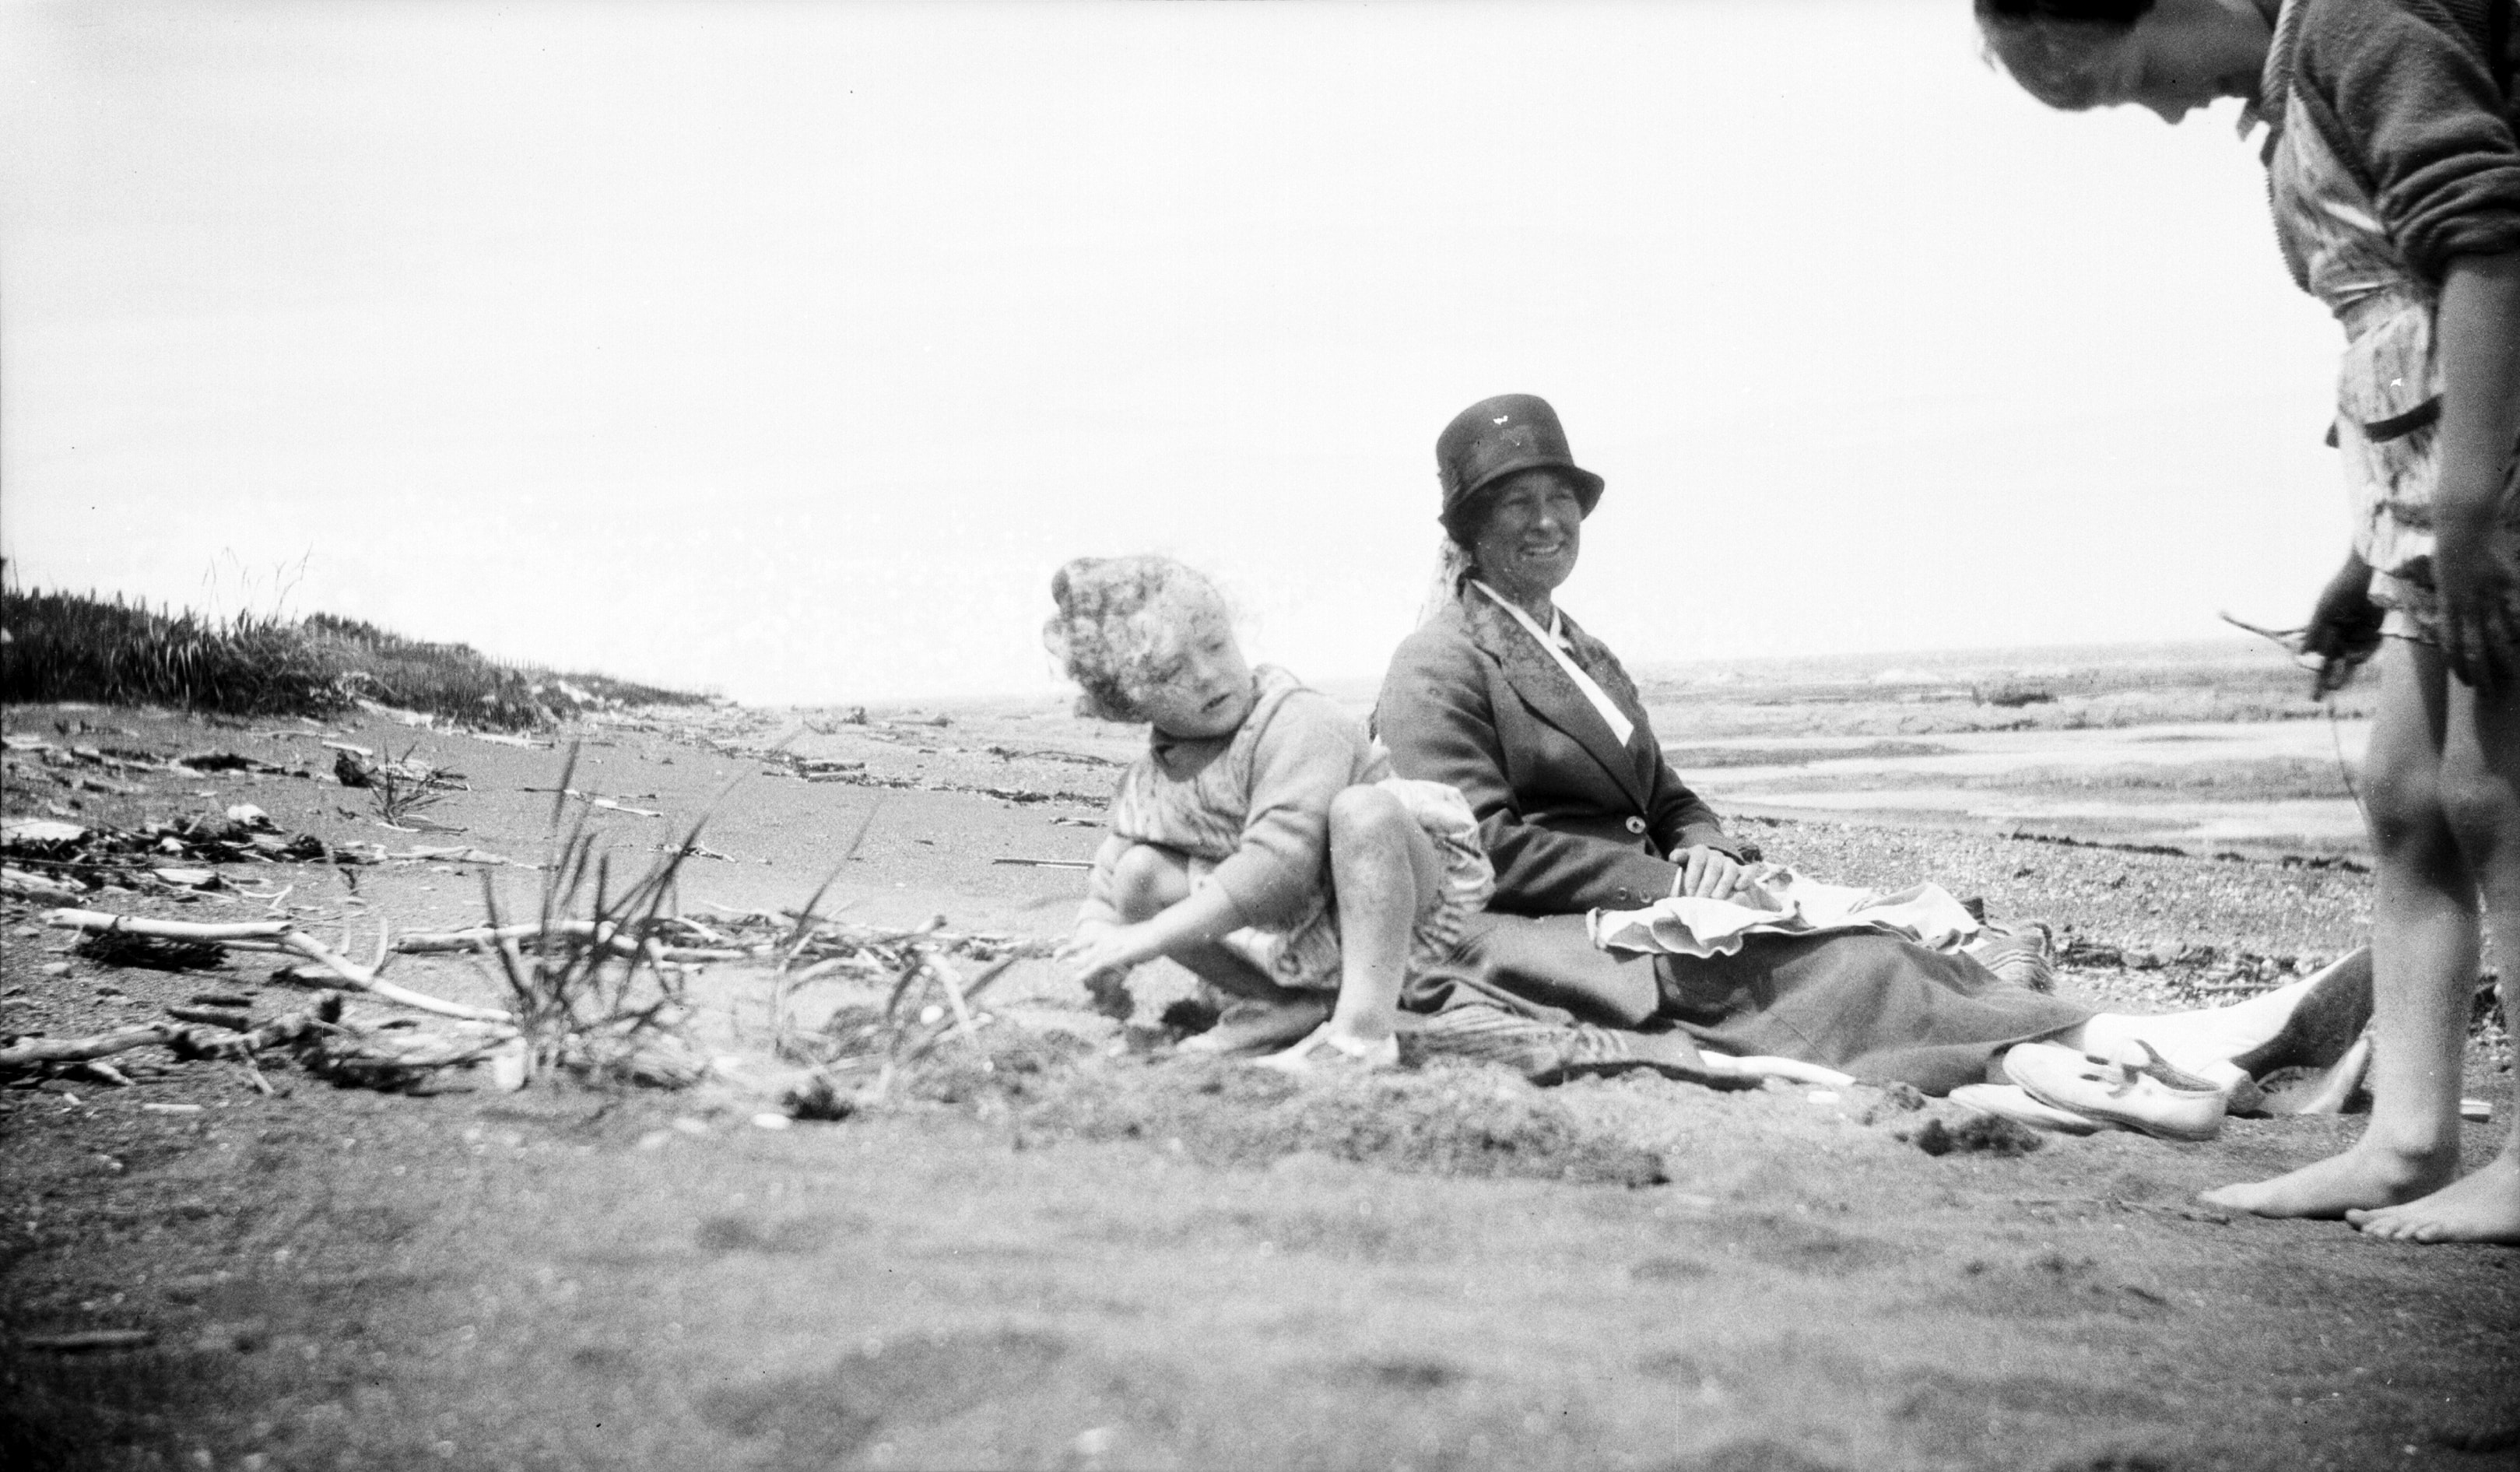 Deux enfants jouent sur la plage à marée basse, surveillés par une femme assise.